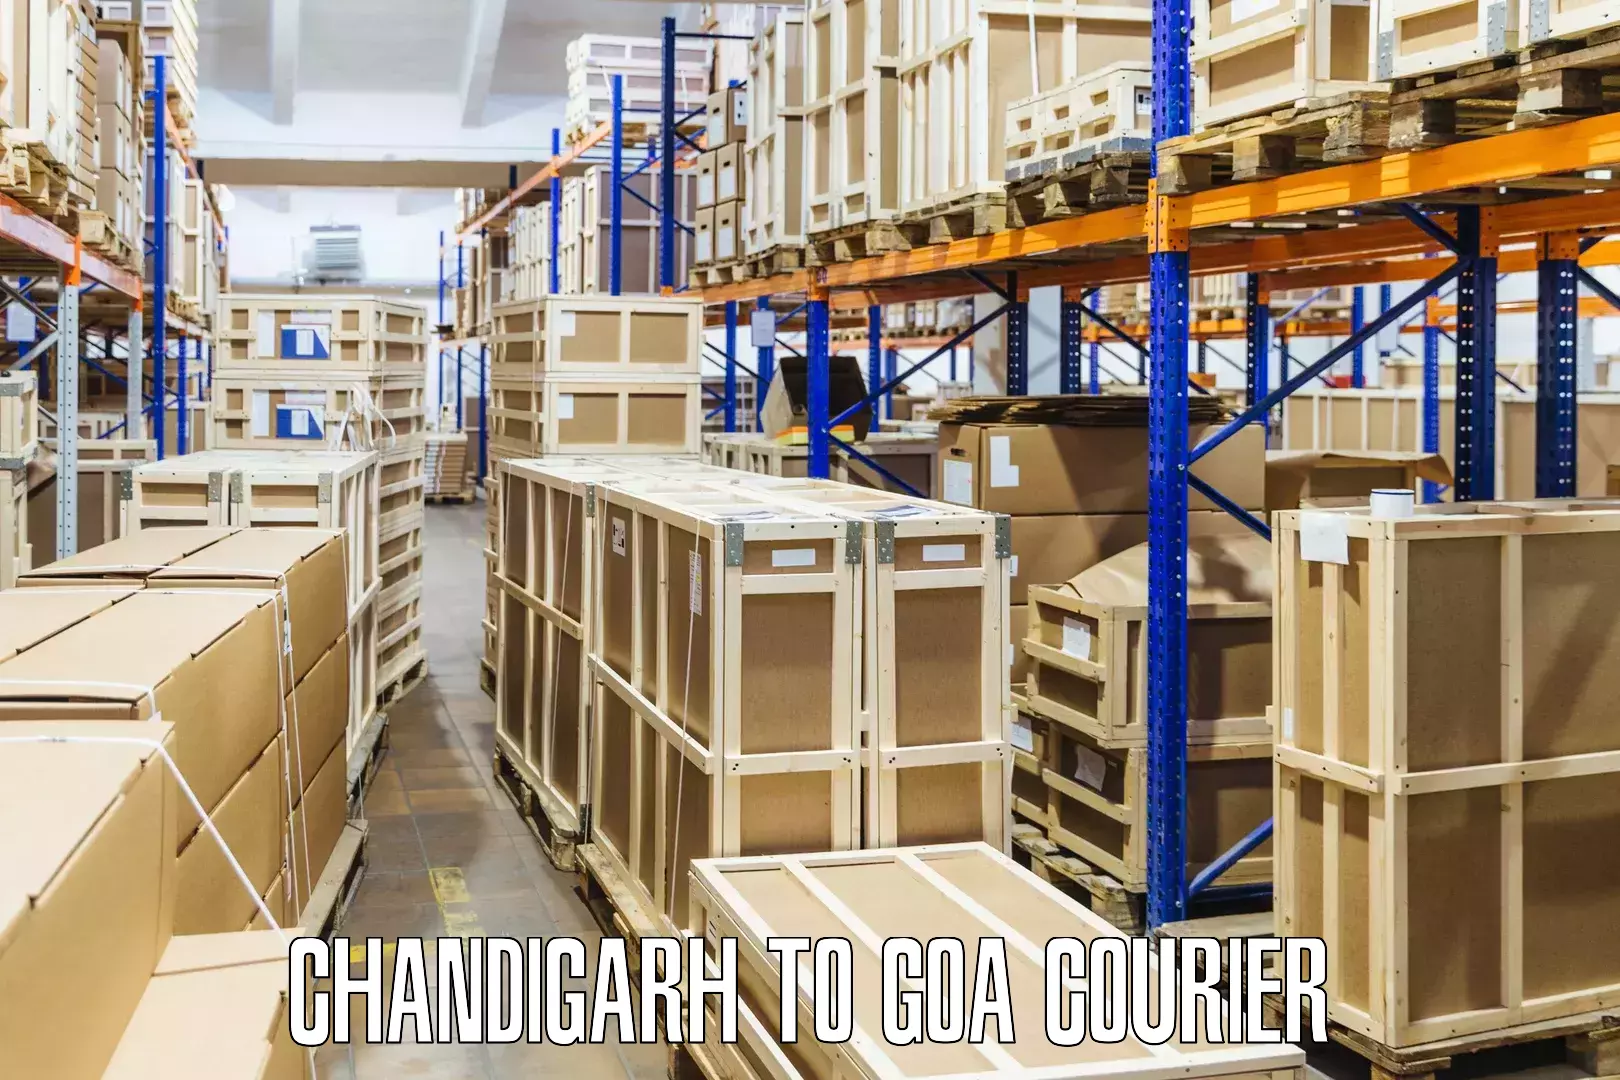 Cross-border shipping Chandigarh to Canacona